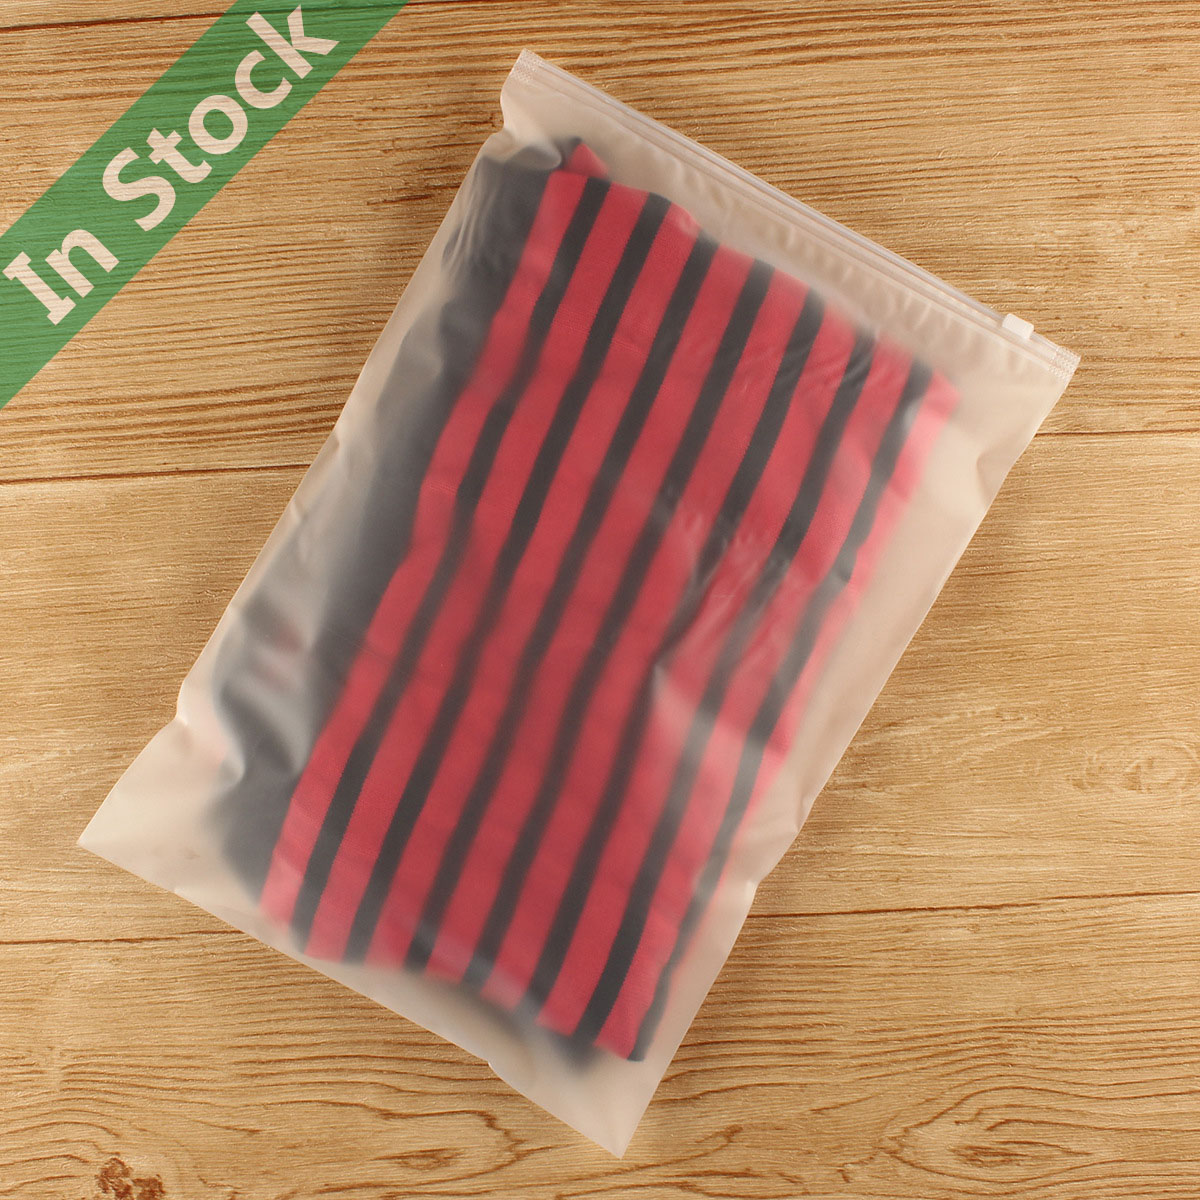 https://www.dreamcitypack.com/shoppic/frosted-plastic-slider-ziplock-bag-reclosable.jpg